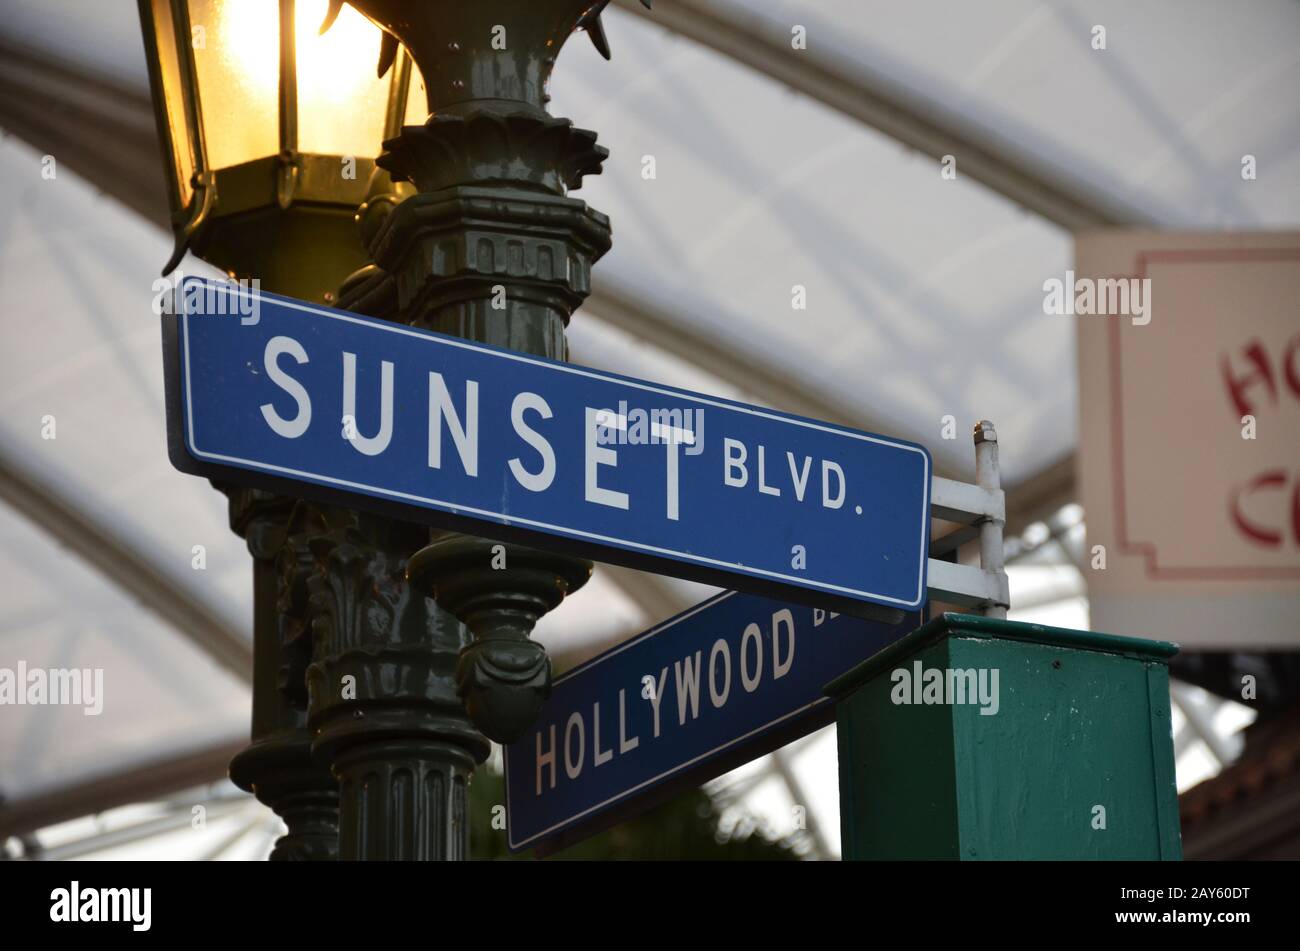 Sunset Blvd street sign Banque D'Images